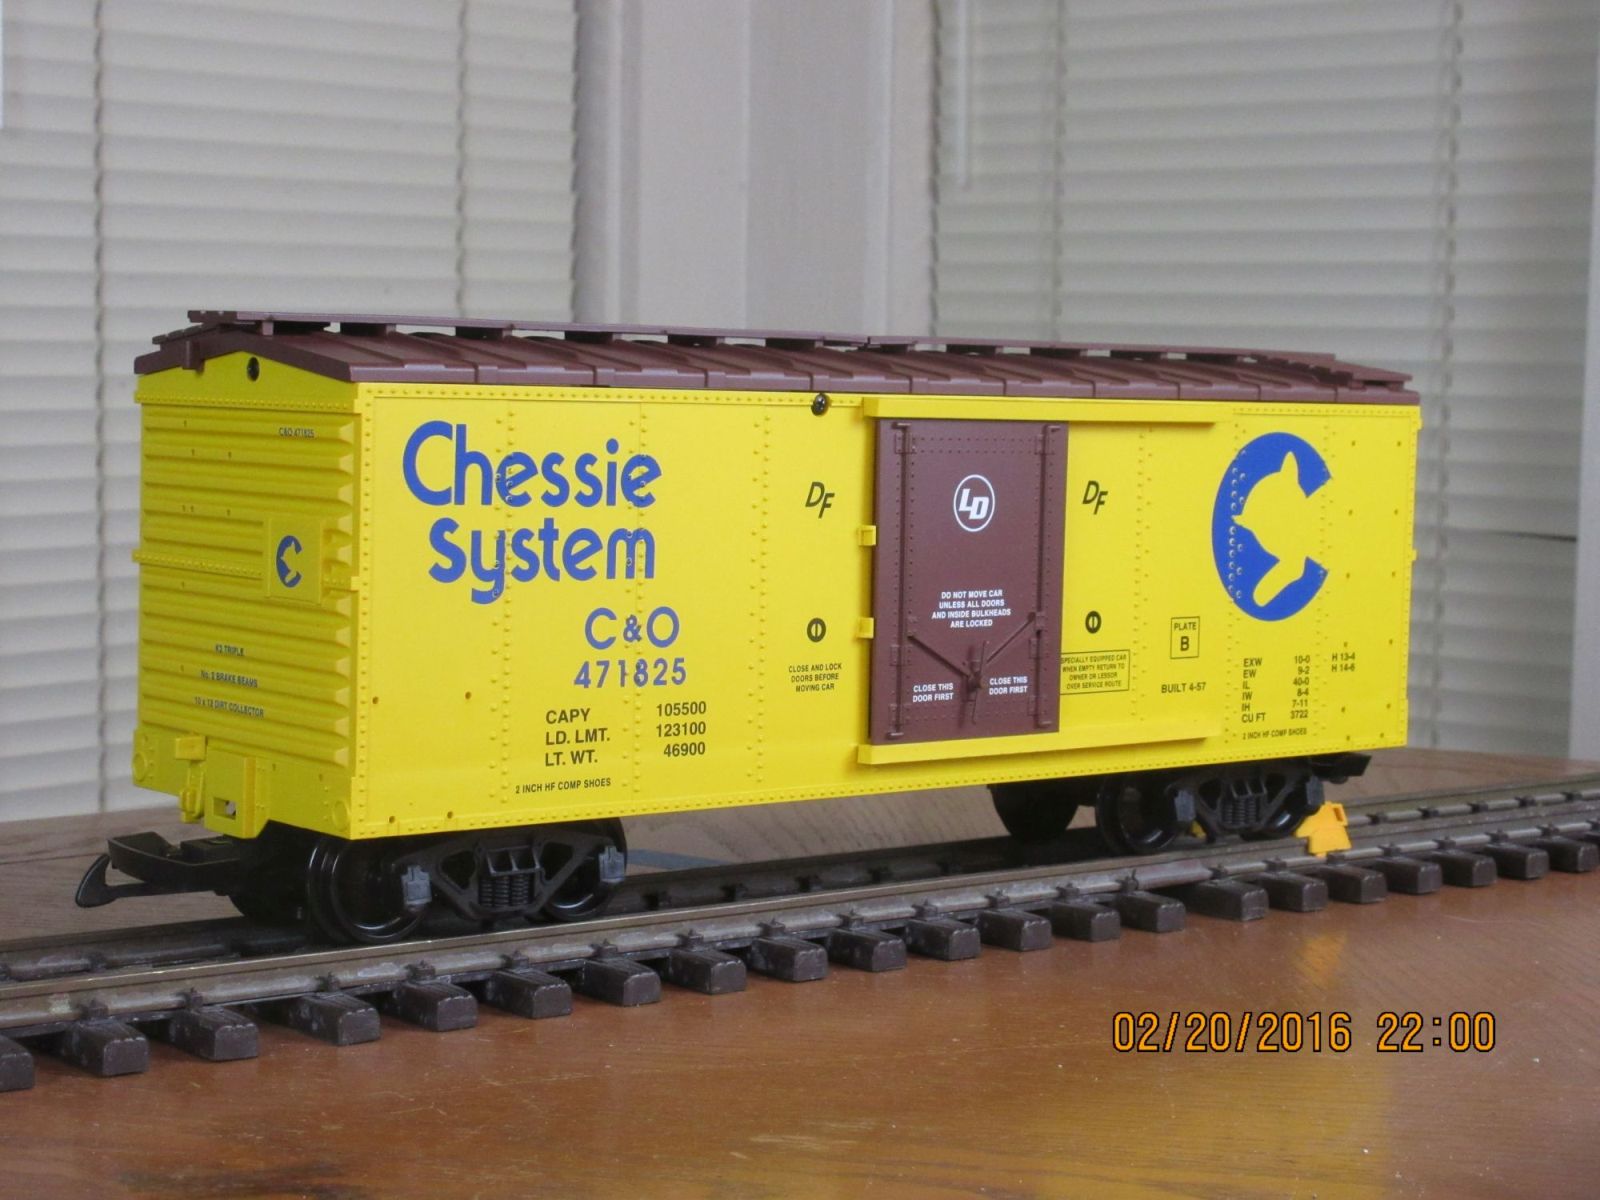 R19102A Chessie System C&O 471825